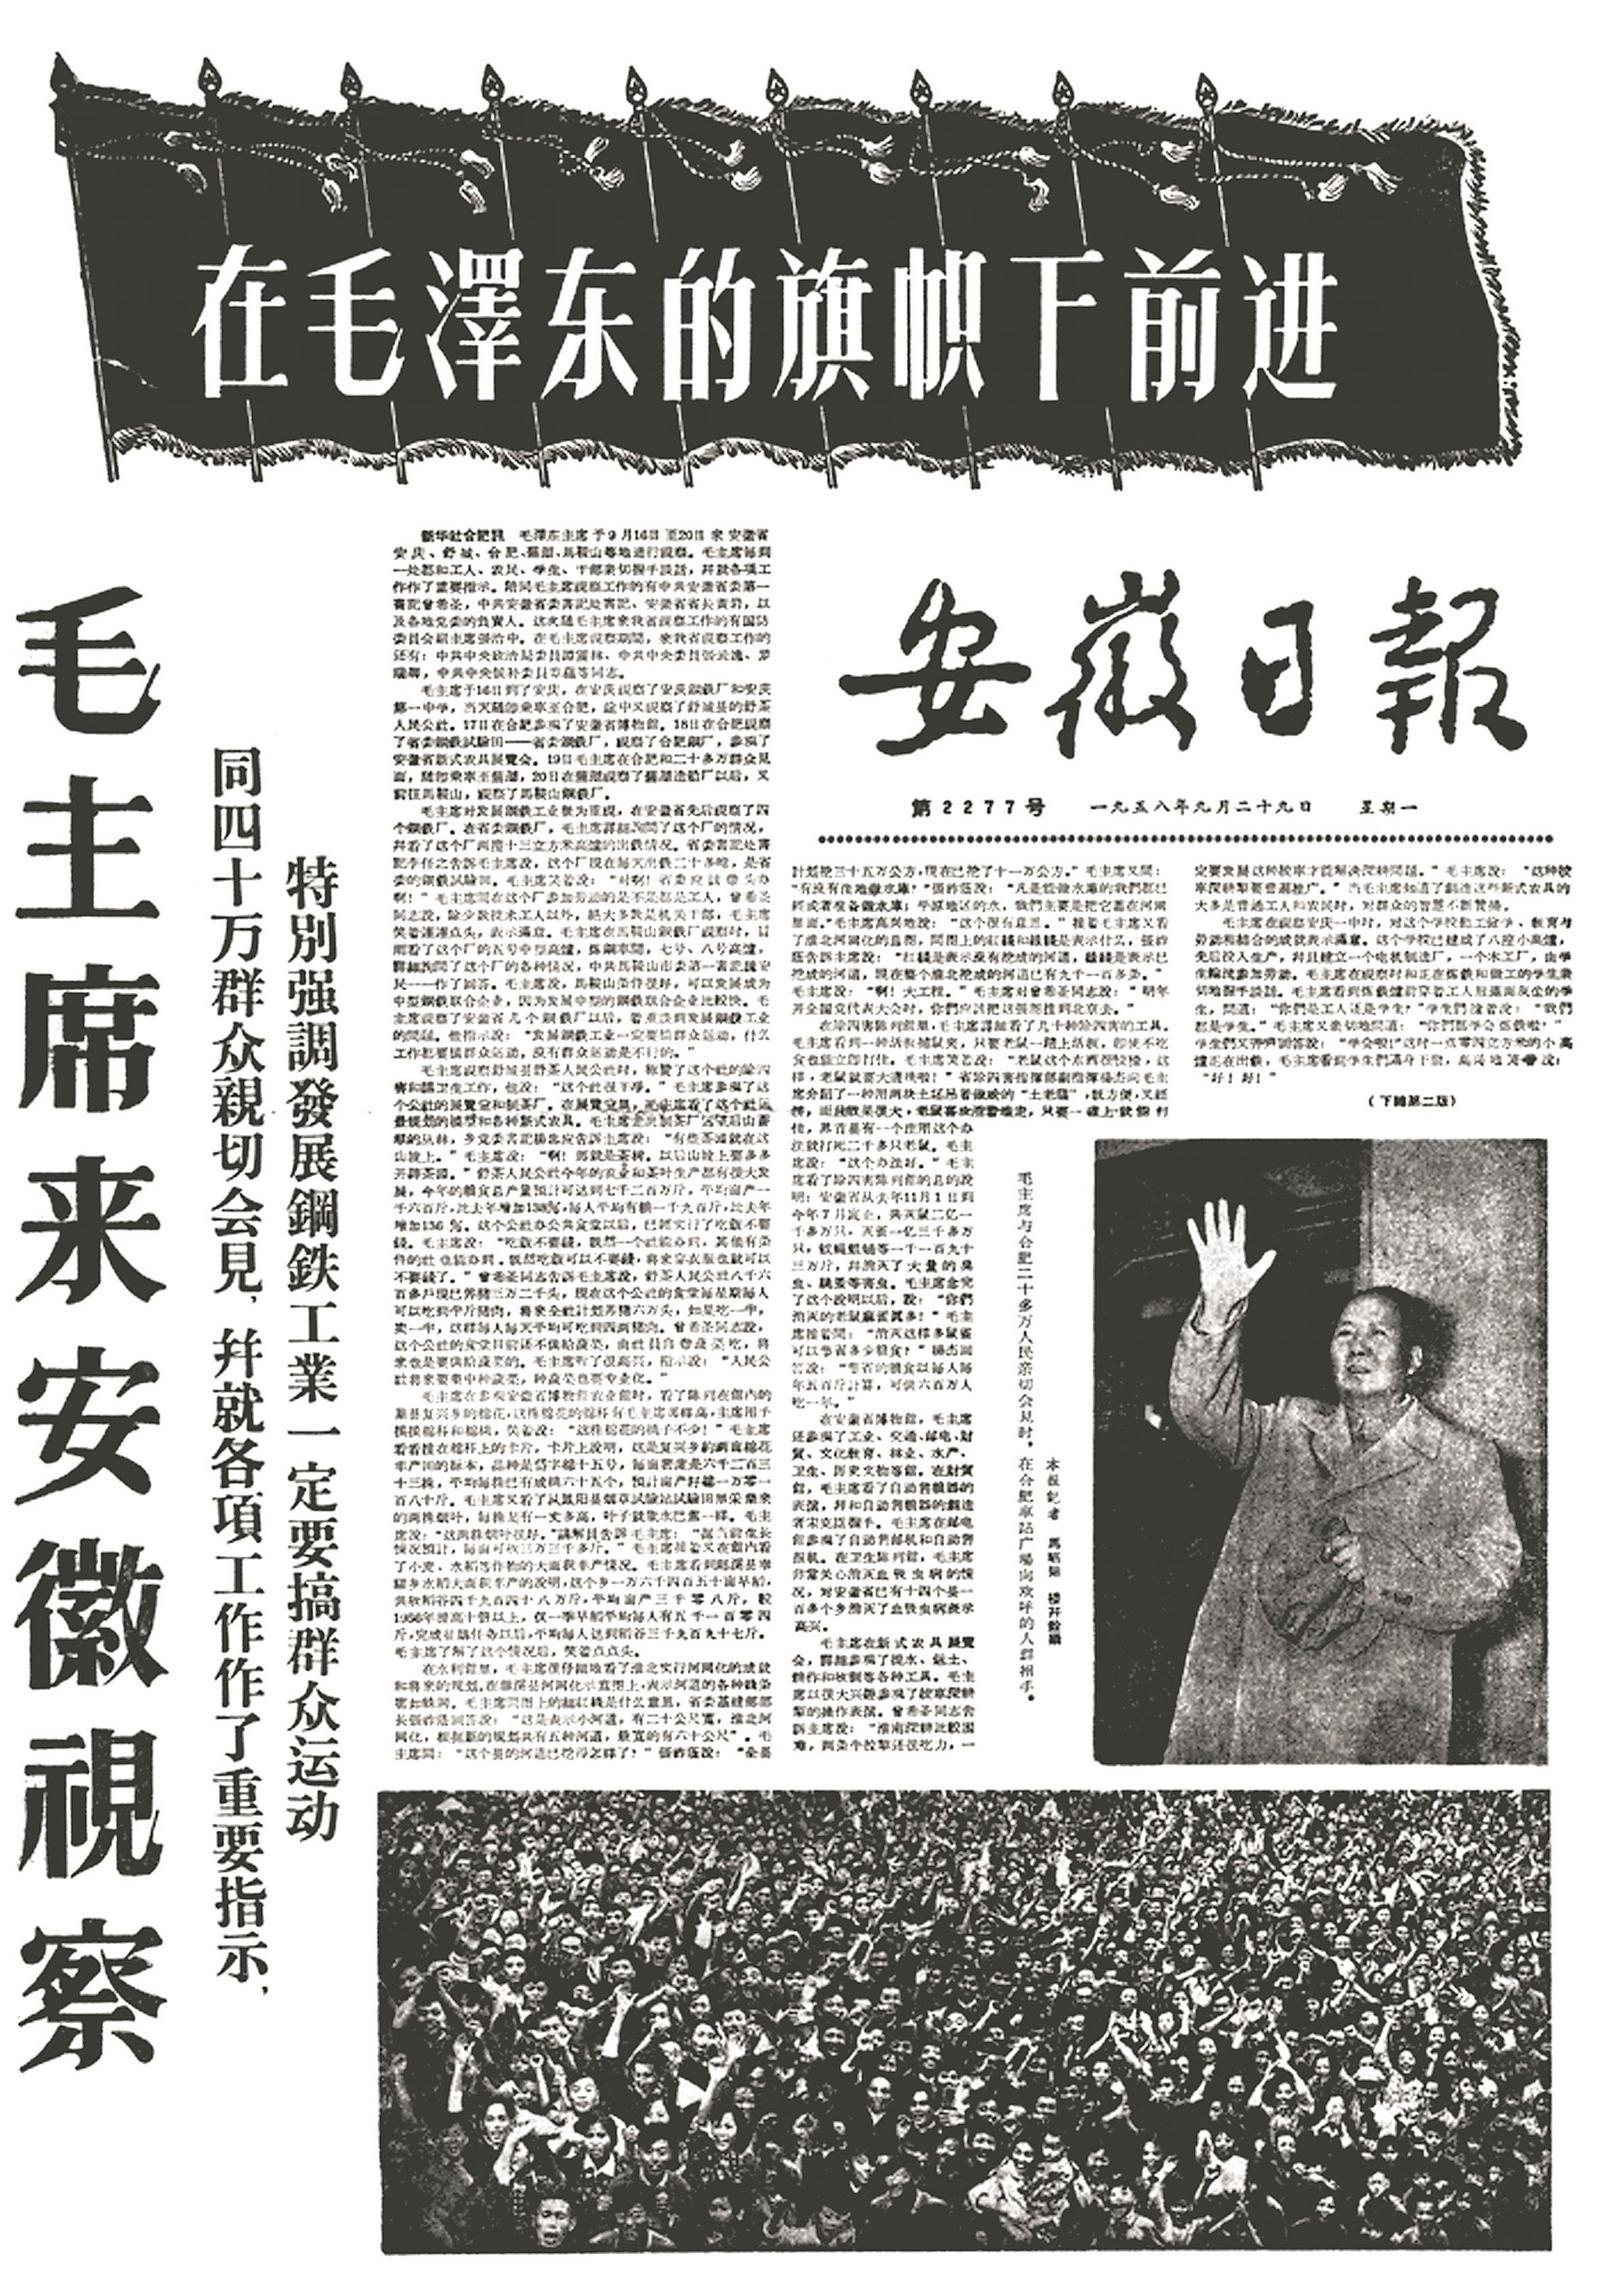 报道毛泽东同志来安徽视察的安徽日报版面。